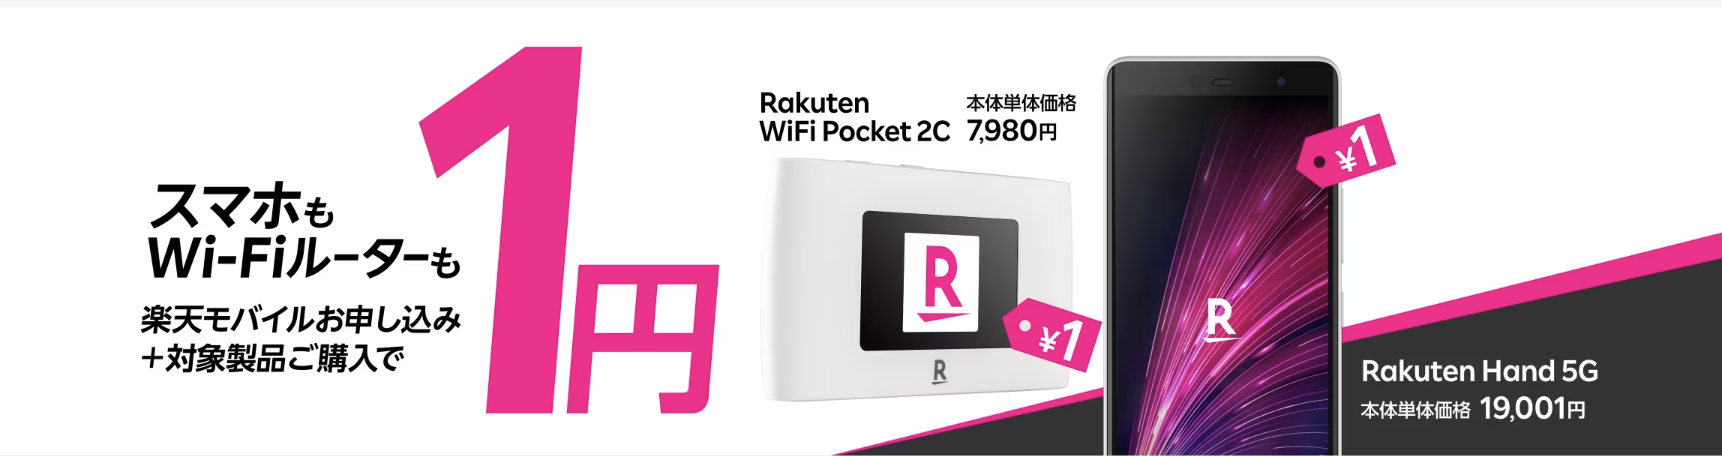 Rakuten WiFi Pocket1円キャンペーン